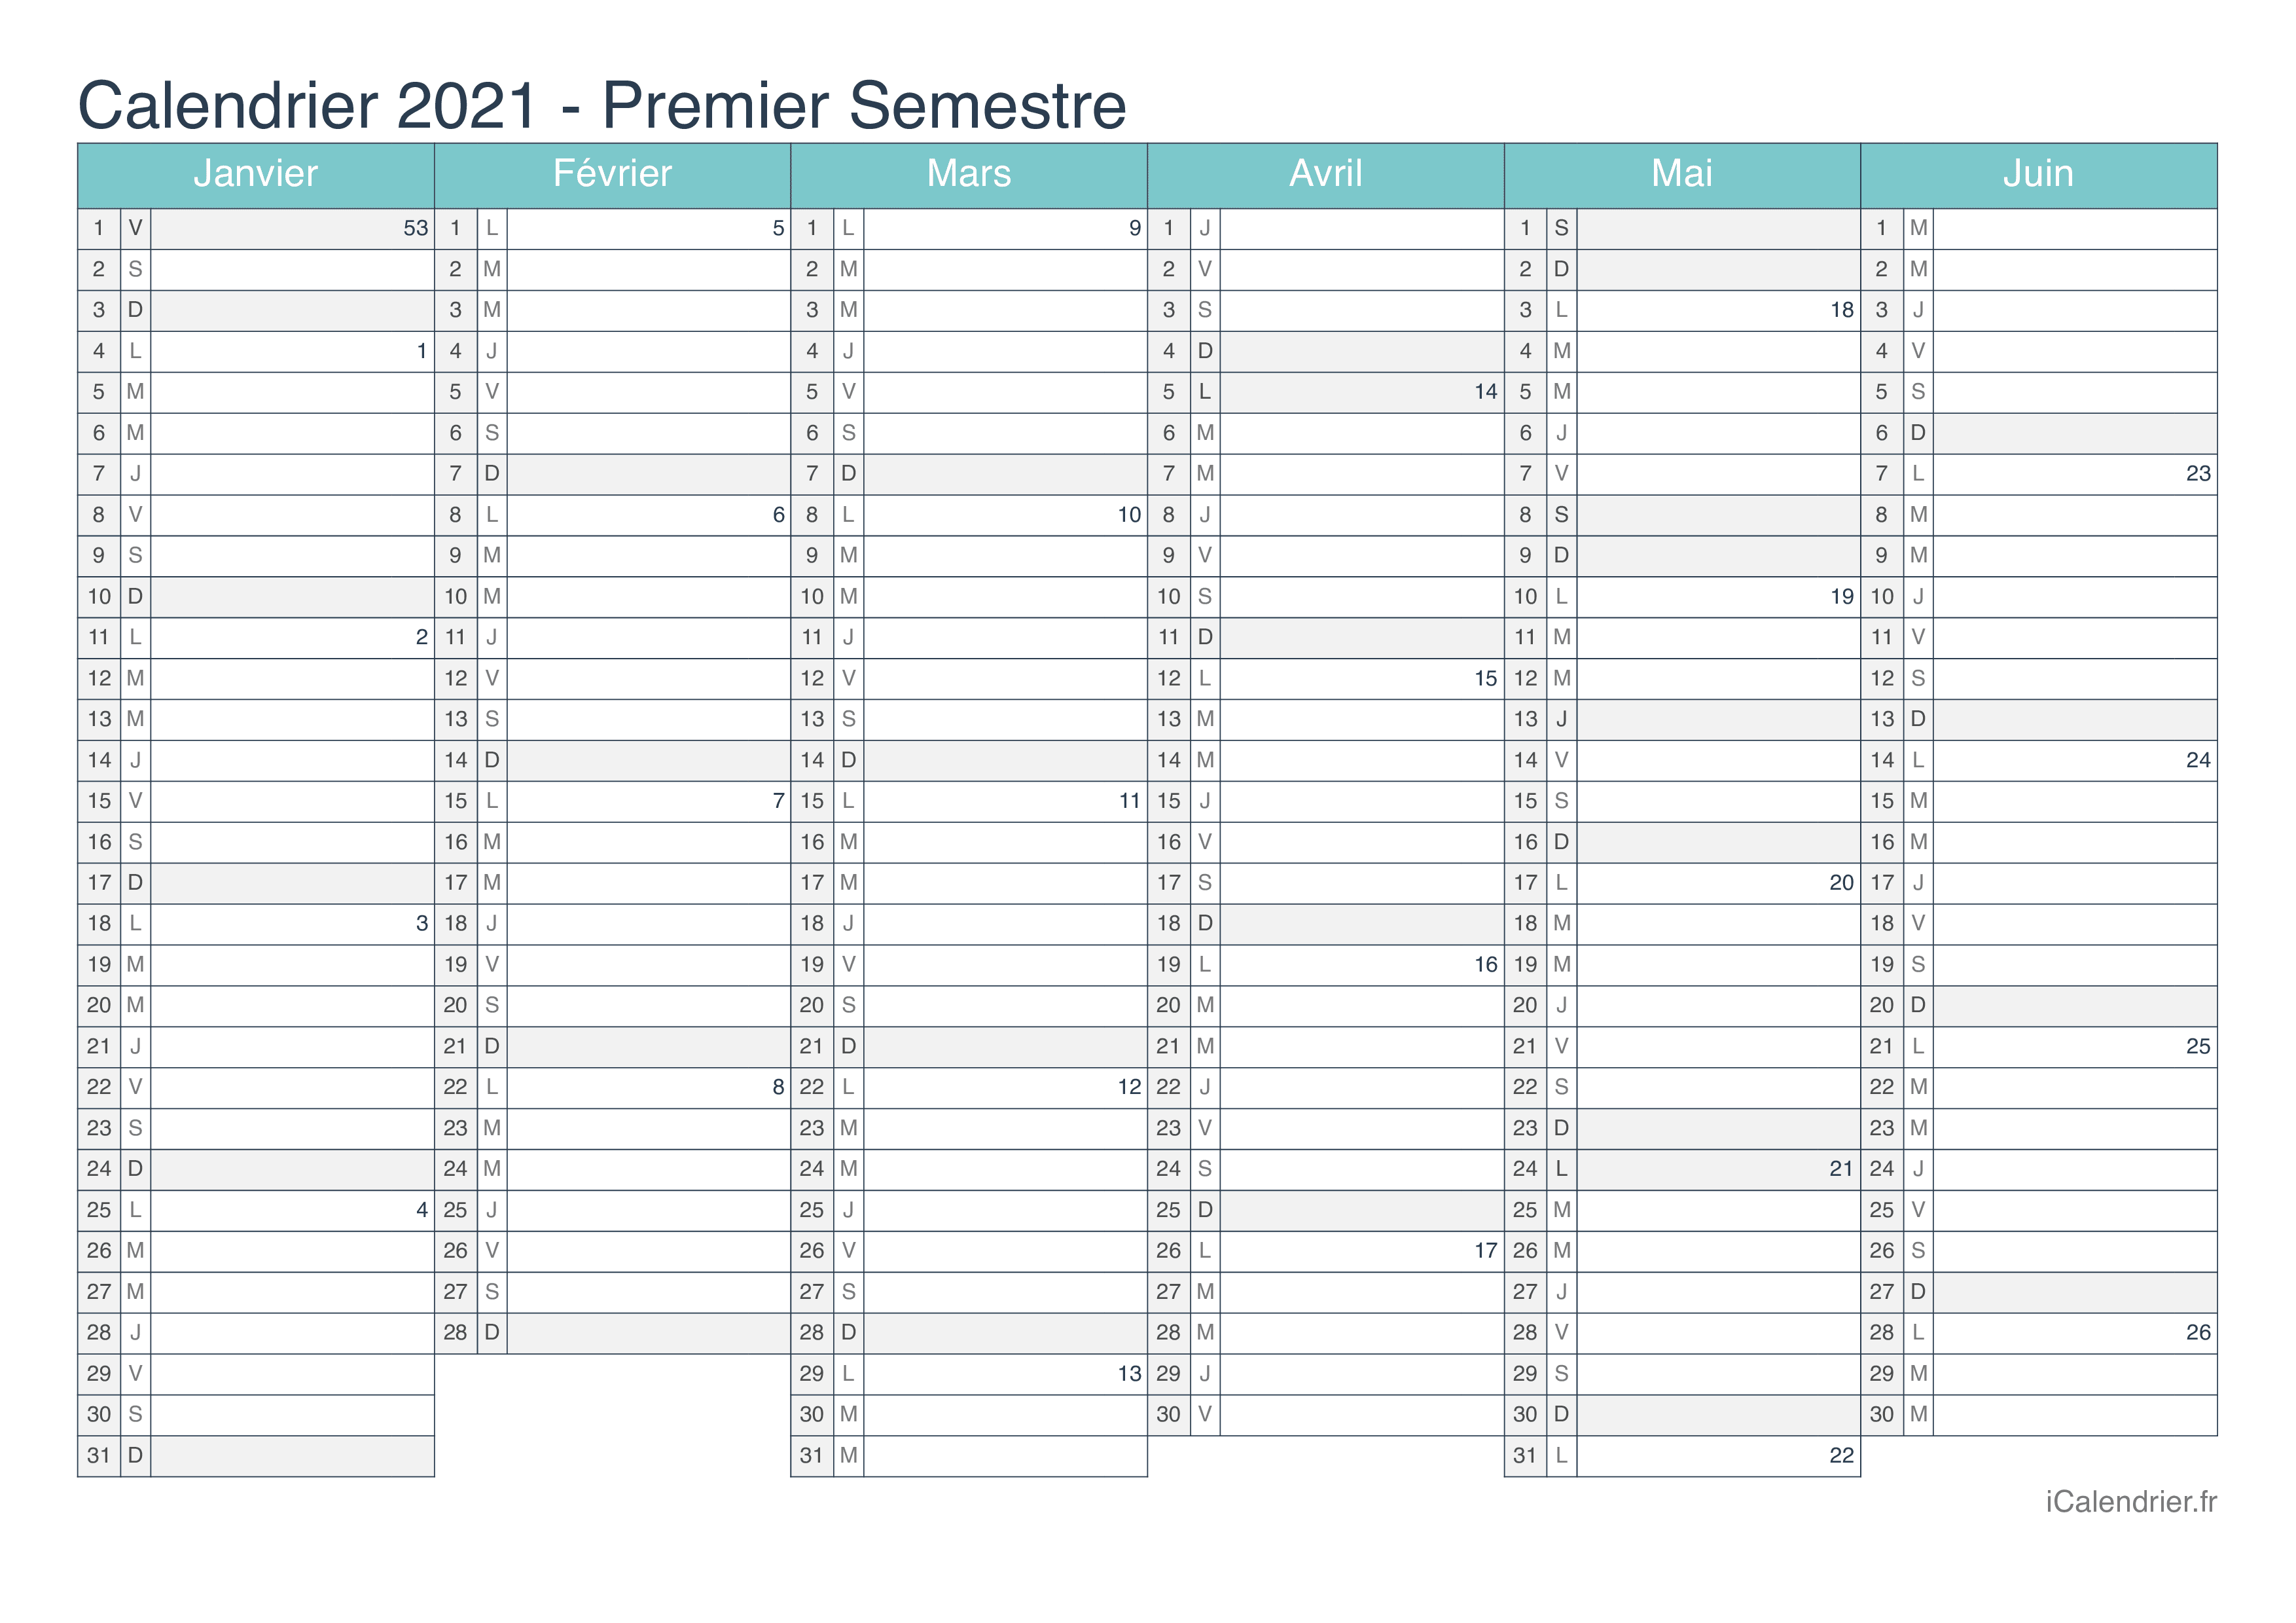 Calendrier par semestre avec numéros des semaines 2021 - Turquoise